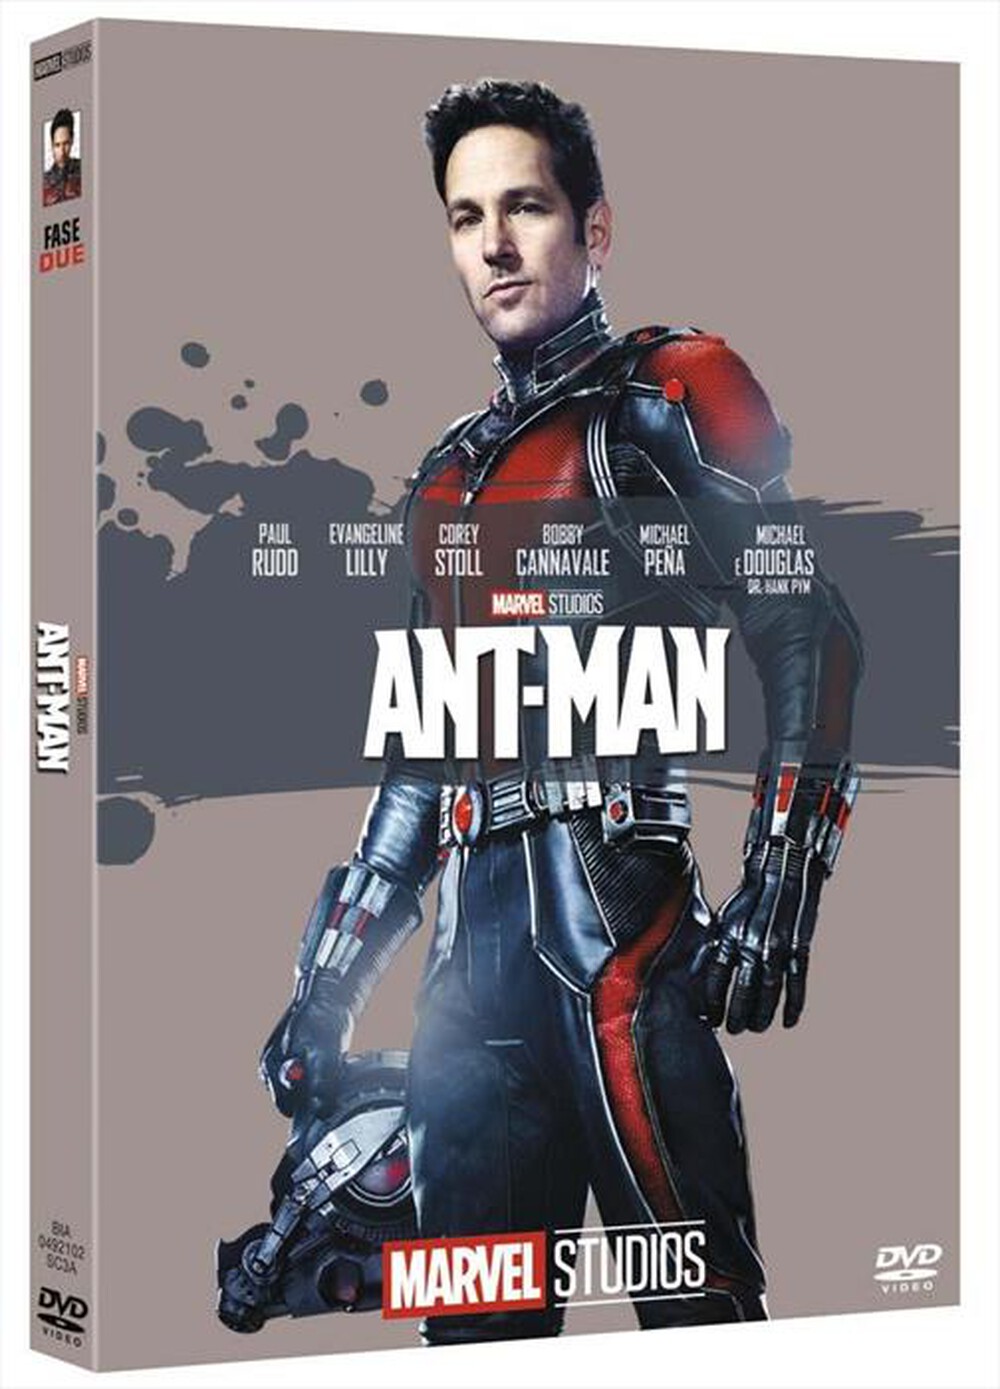 "WALT DISNEY - Ant-Man (Edizione Marvel Studios 10 Anniversario) - "